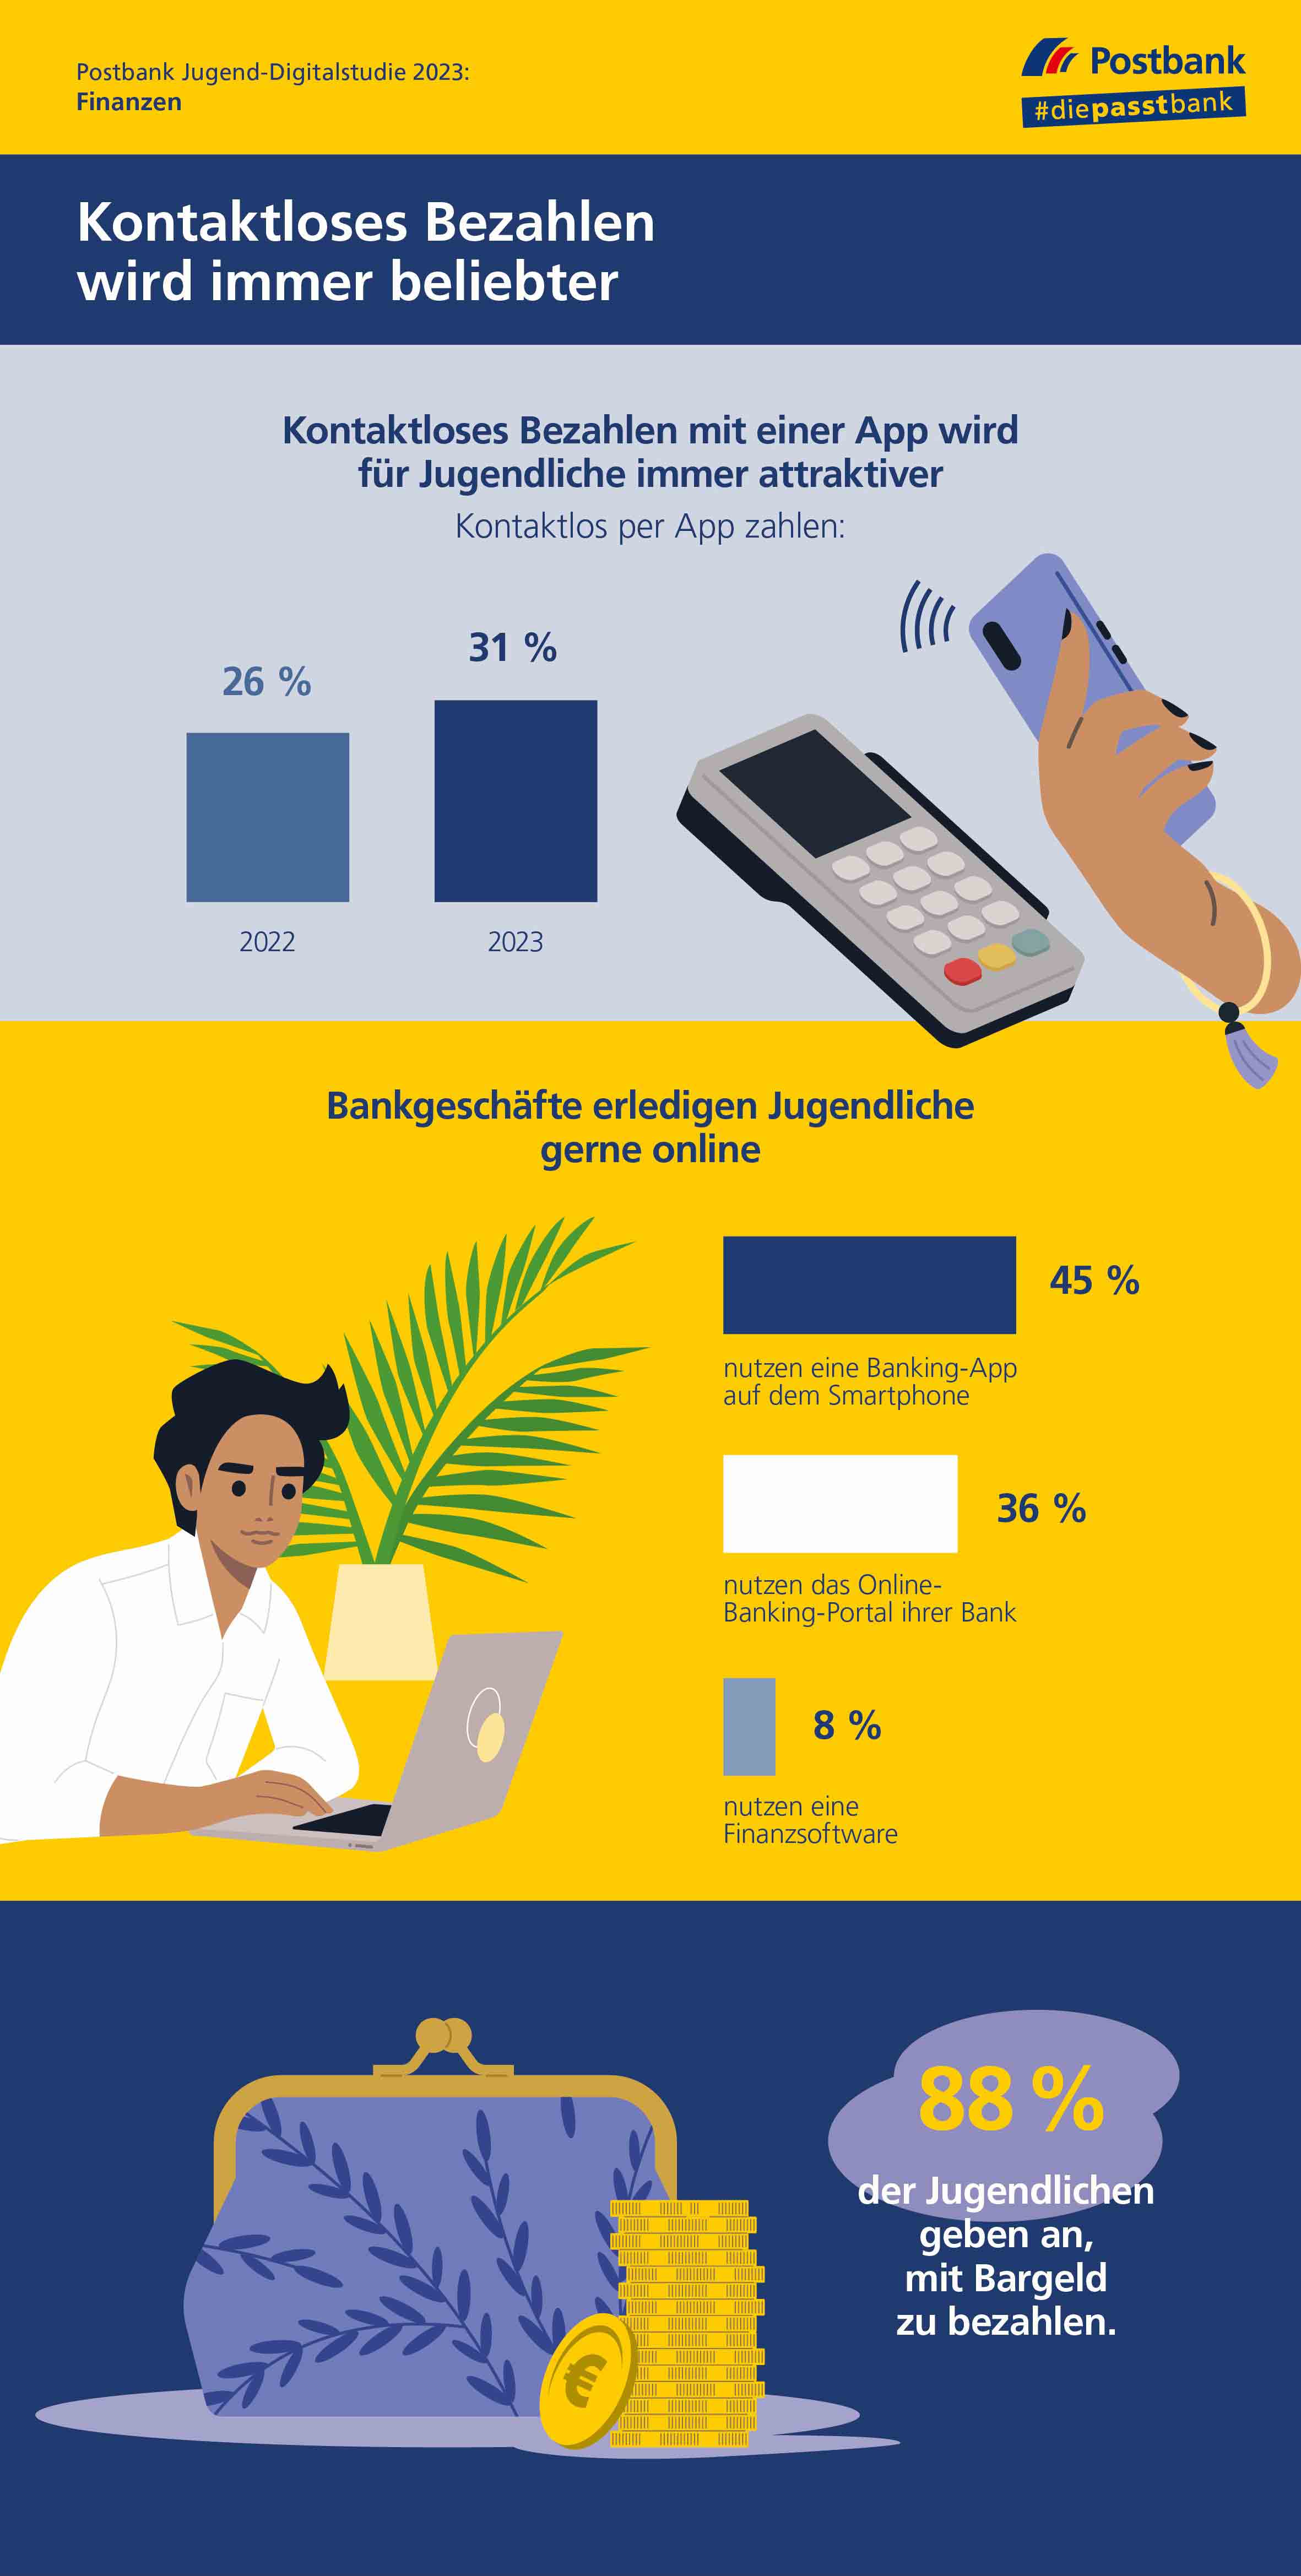 Postbank Jugend Digitalstudie 2023: Fast jeder dritte Jugendliche zahlt bereits mit Smartphone & Co.